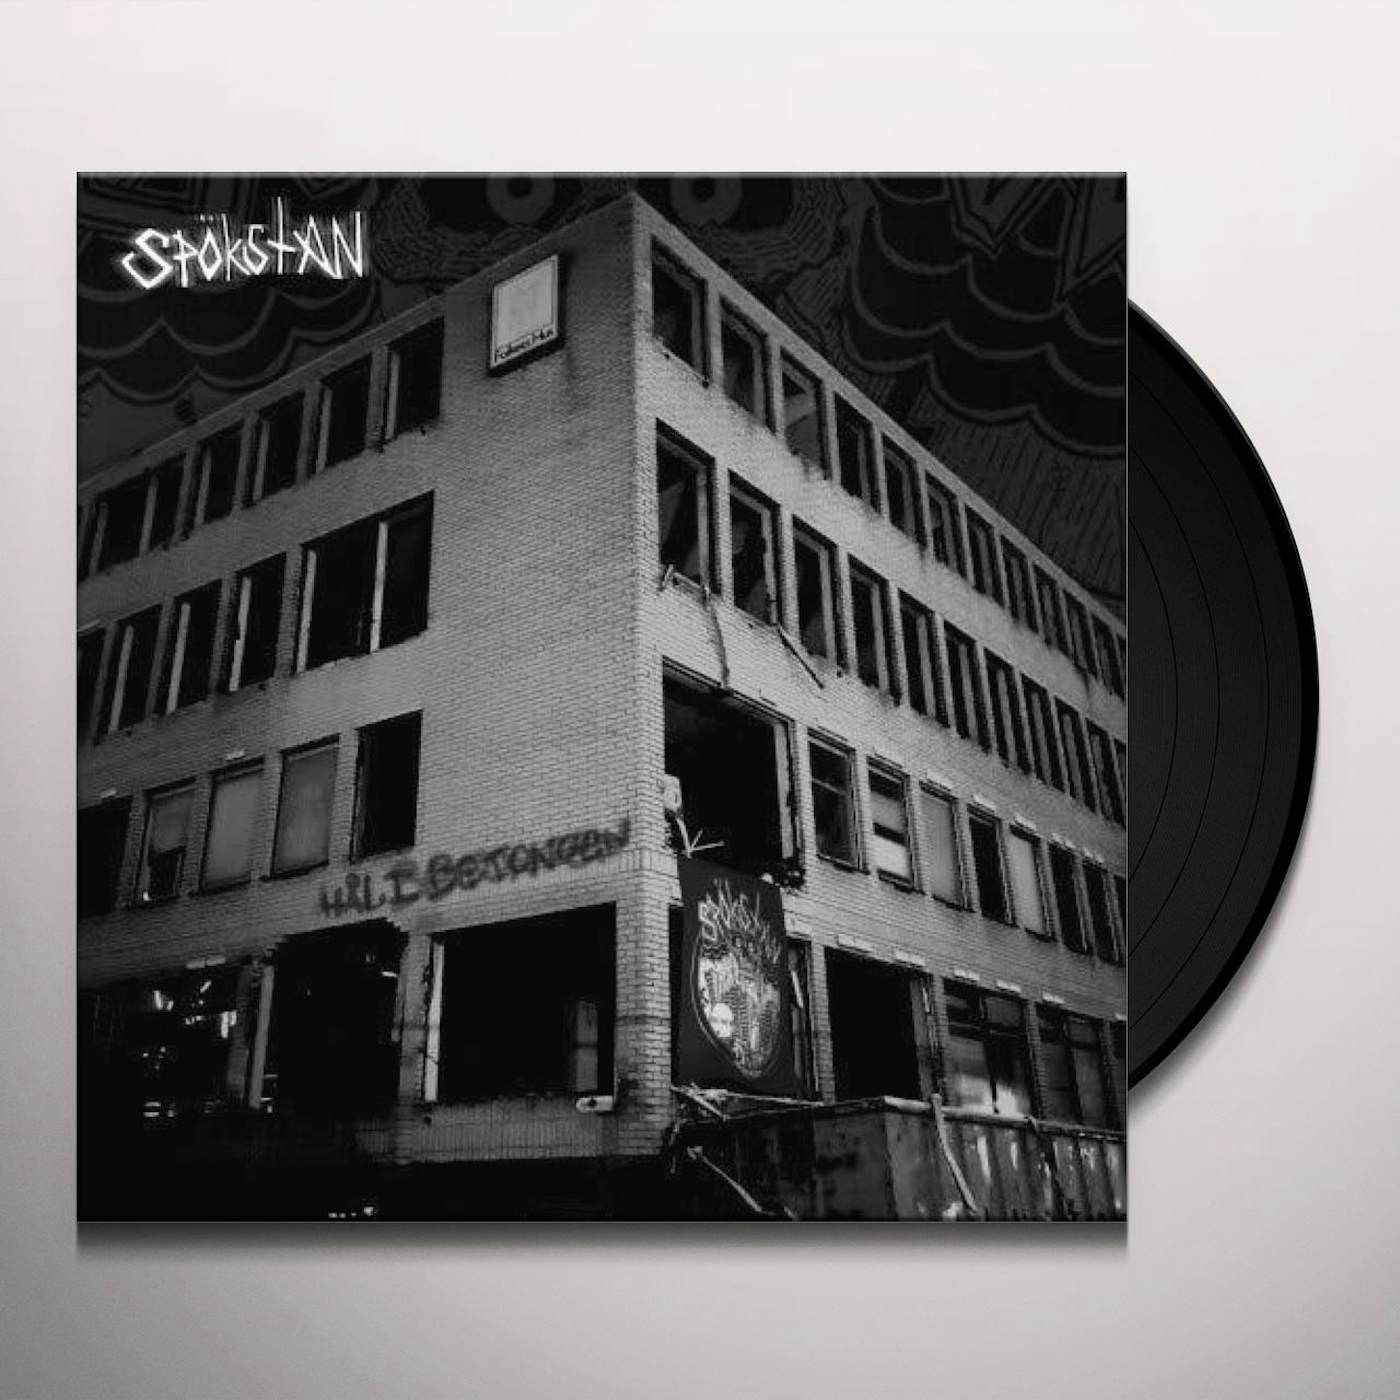 Spökstan Hal i betongen lp Vinyl Record